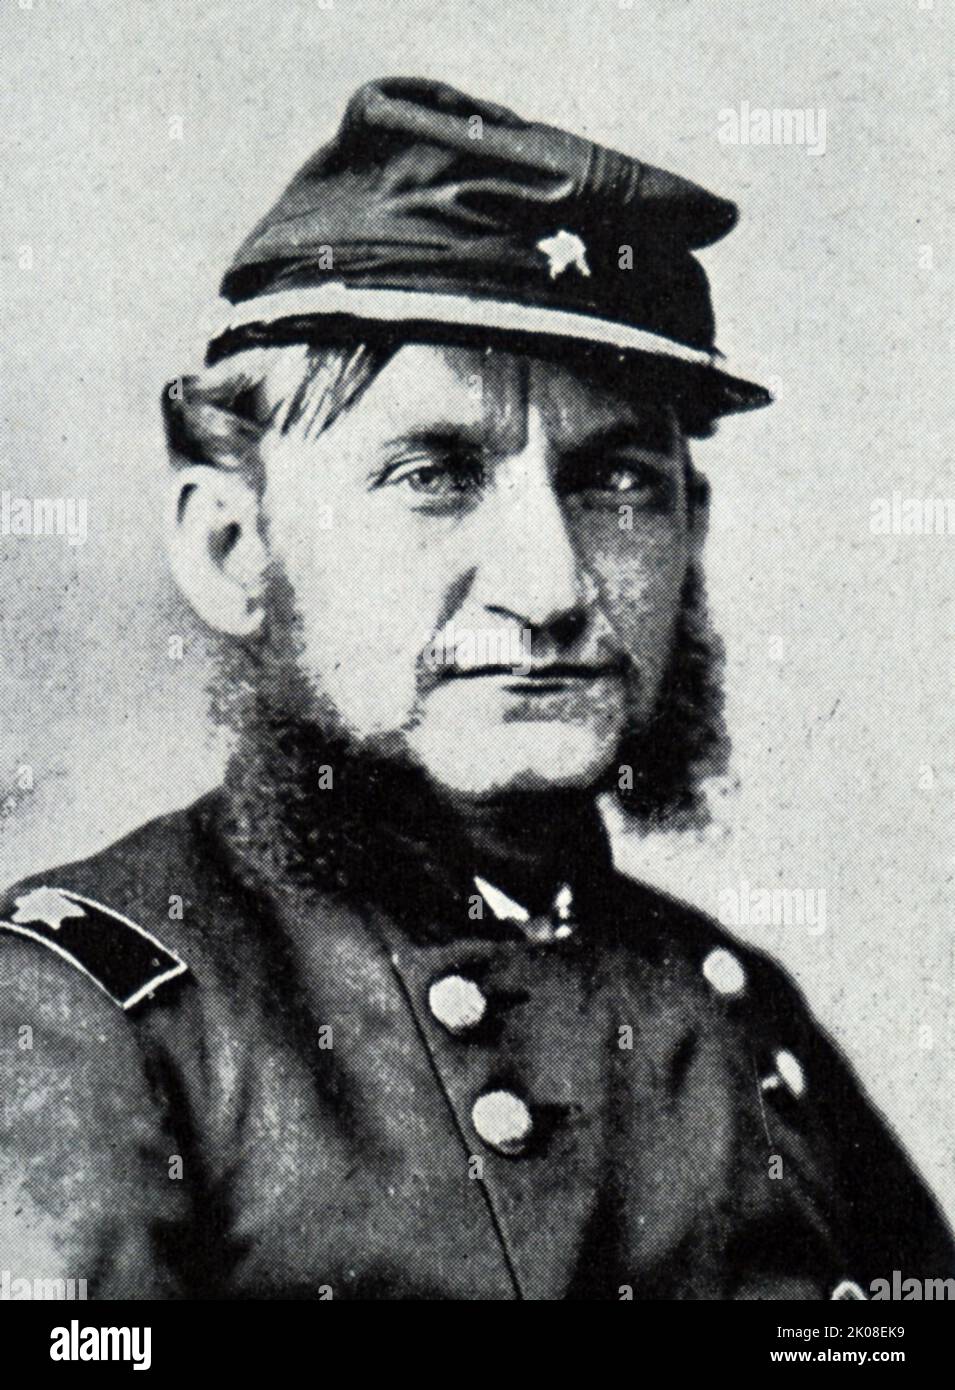 Le général de division Hugh Judson Kilpatrick (14 janvier 1836 - 4 décembre 1881) était officier dans l'armée de l'Union pendant la guerre civile américaine. Plus tard, il a été ministre des États-Unis au Chili et candidat non reçu à la Chambre des représentants des États-Unis. Le major général Hugh Judson Kilpatrick et le personnel Banque D'Images